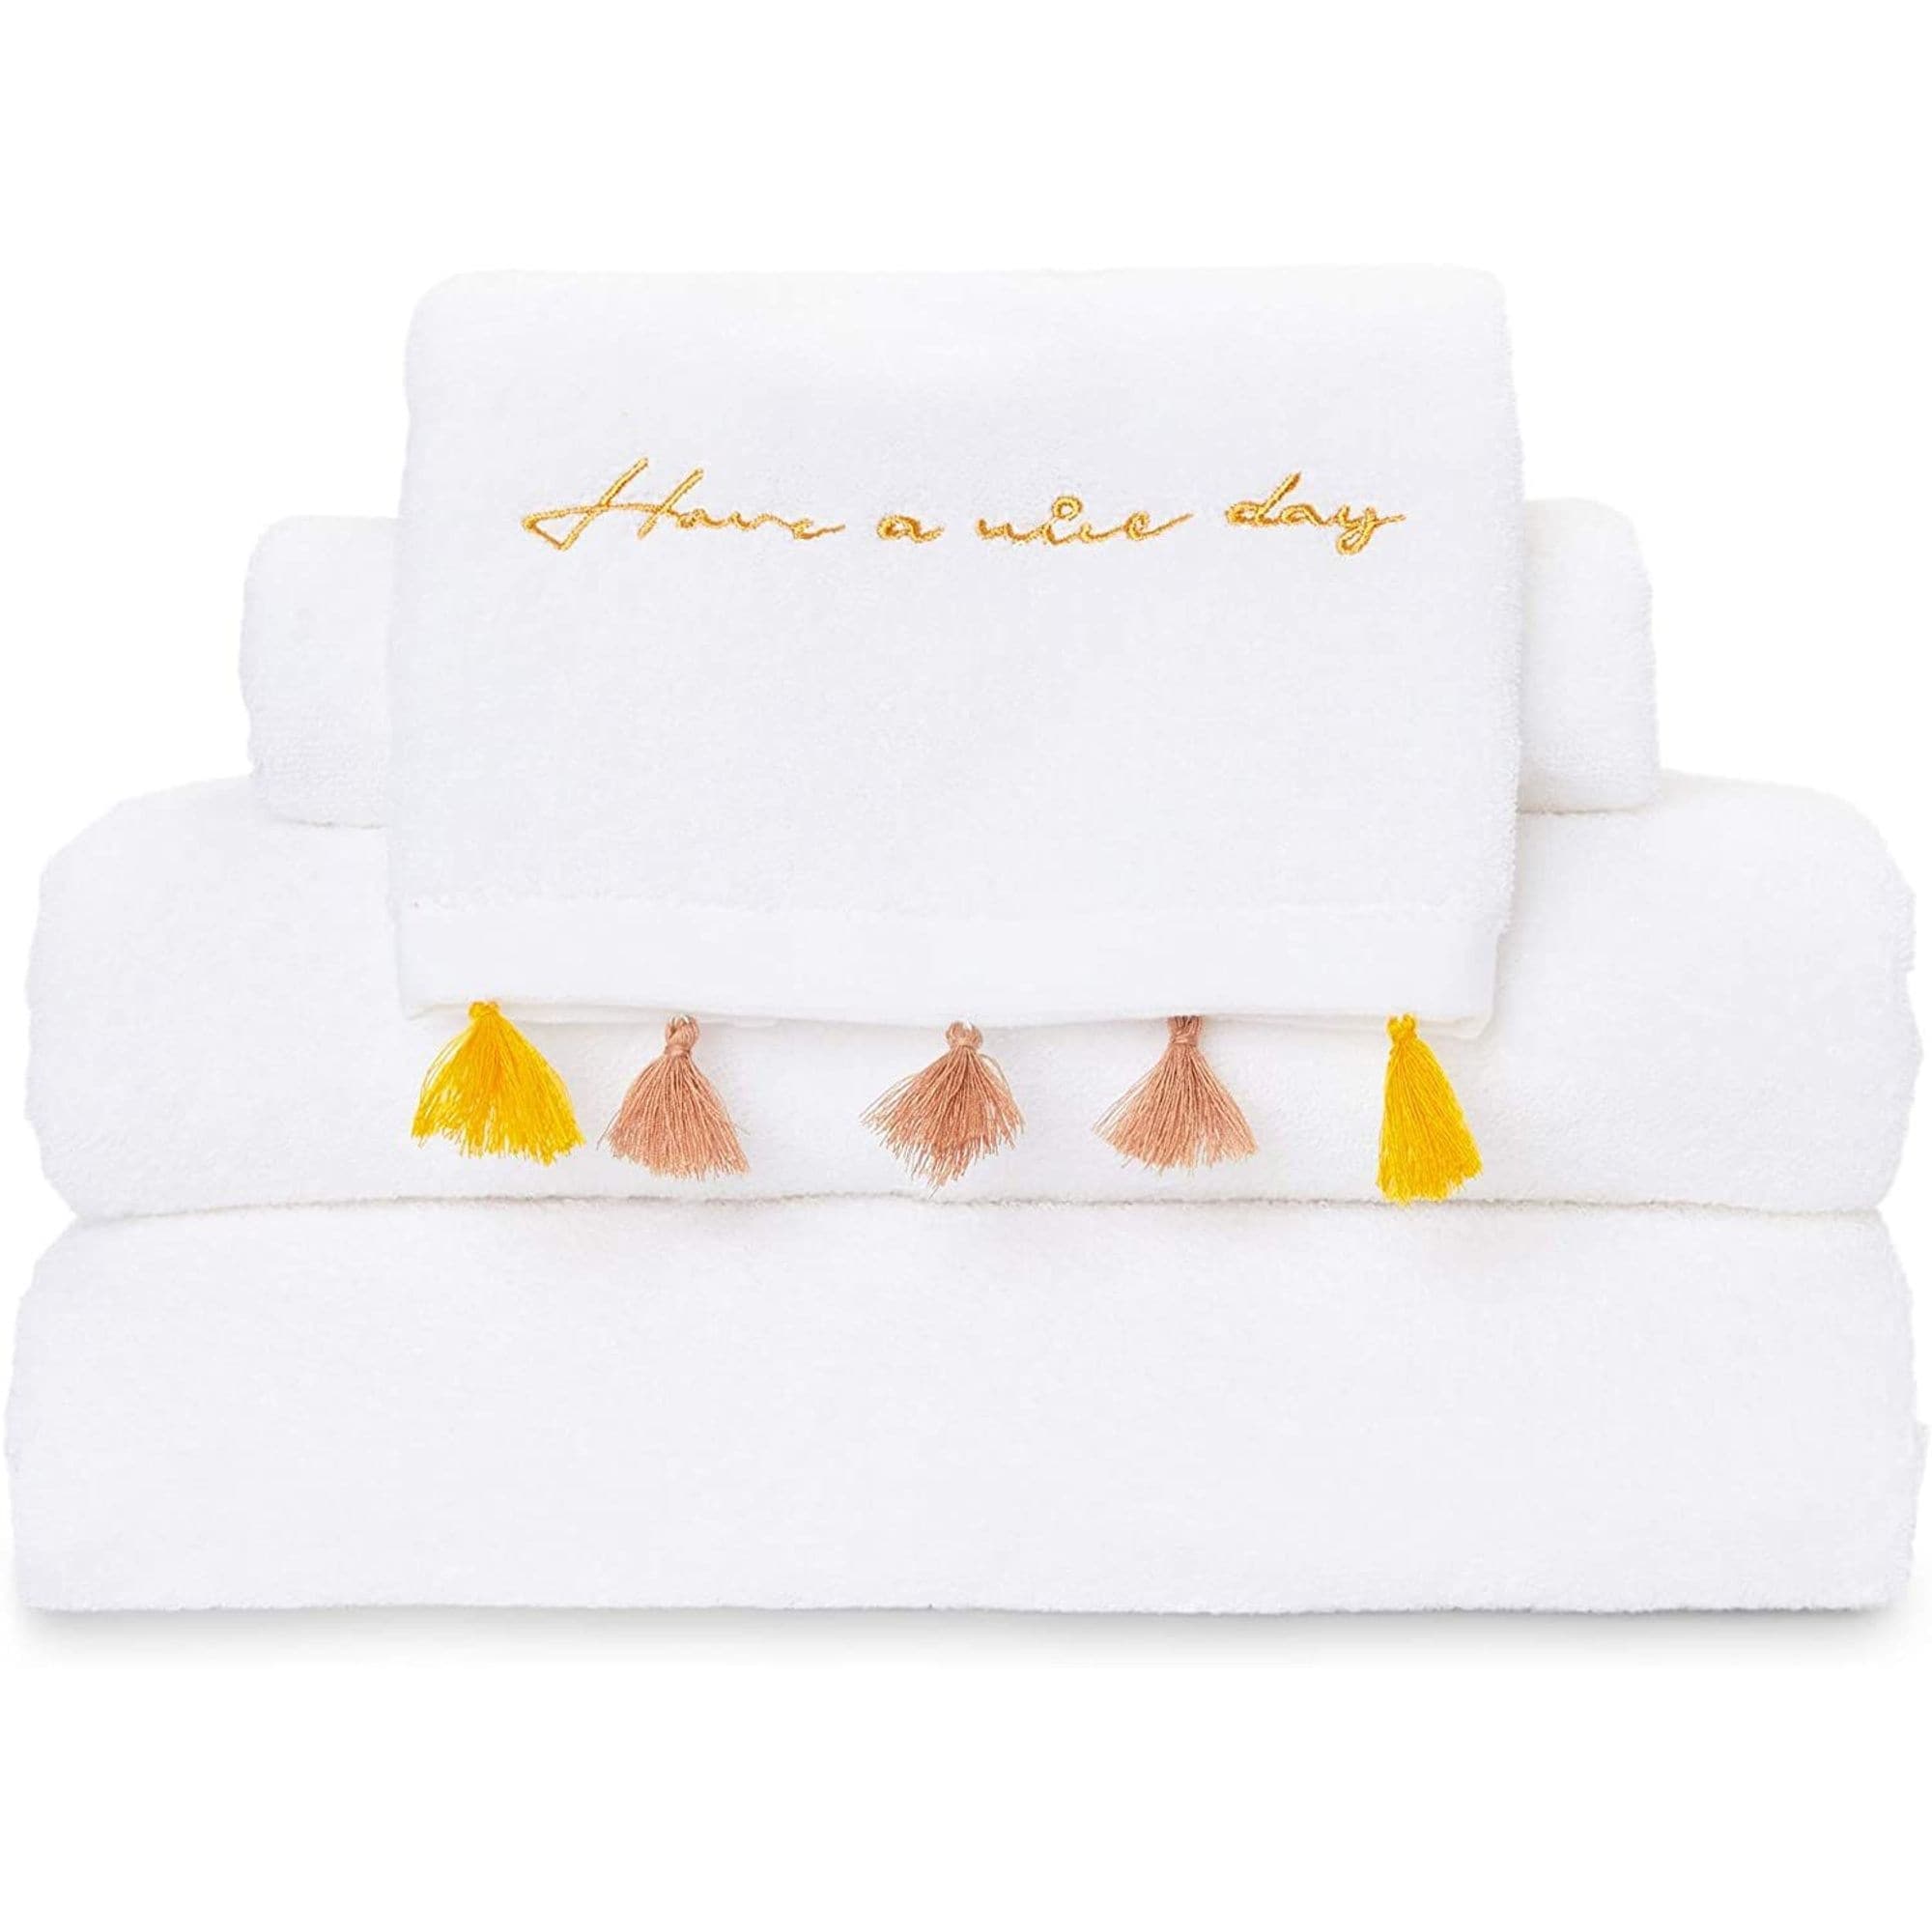 Calvin Klein 4-piece Hand/Washcloth Towel set